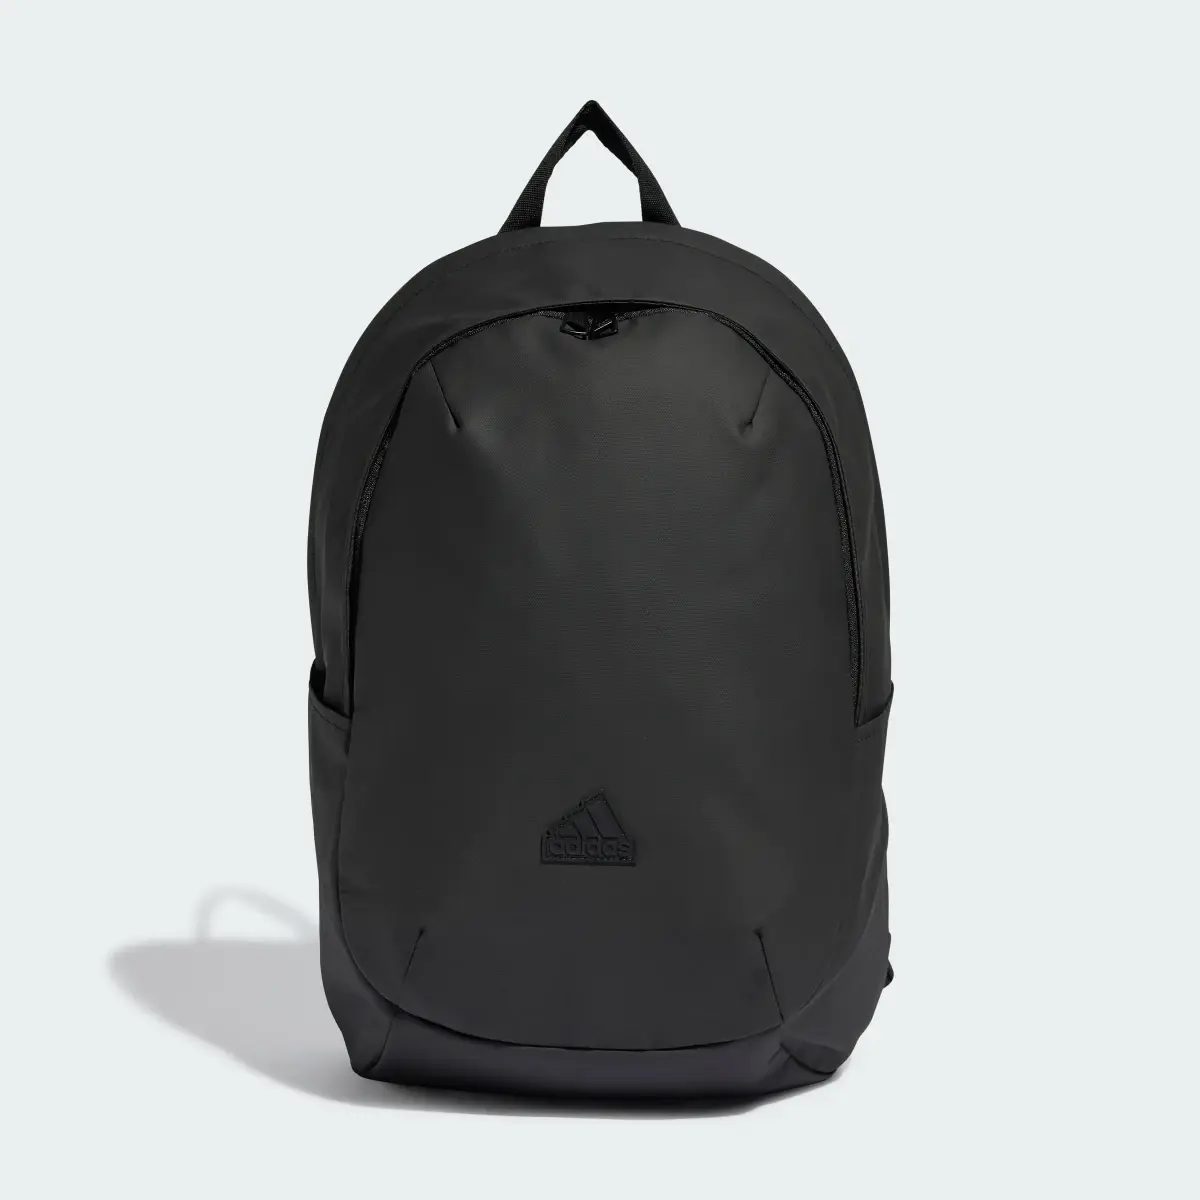 Adidas Ultramodern Backpack. 2